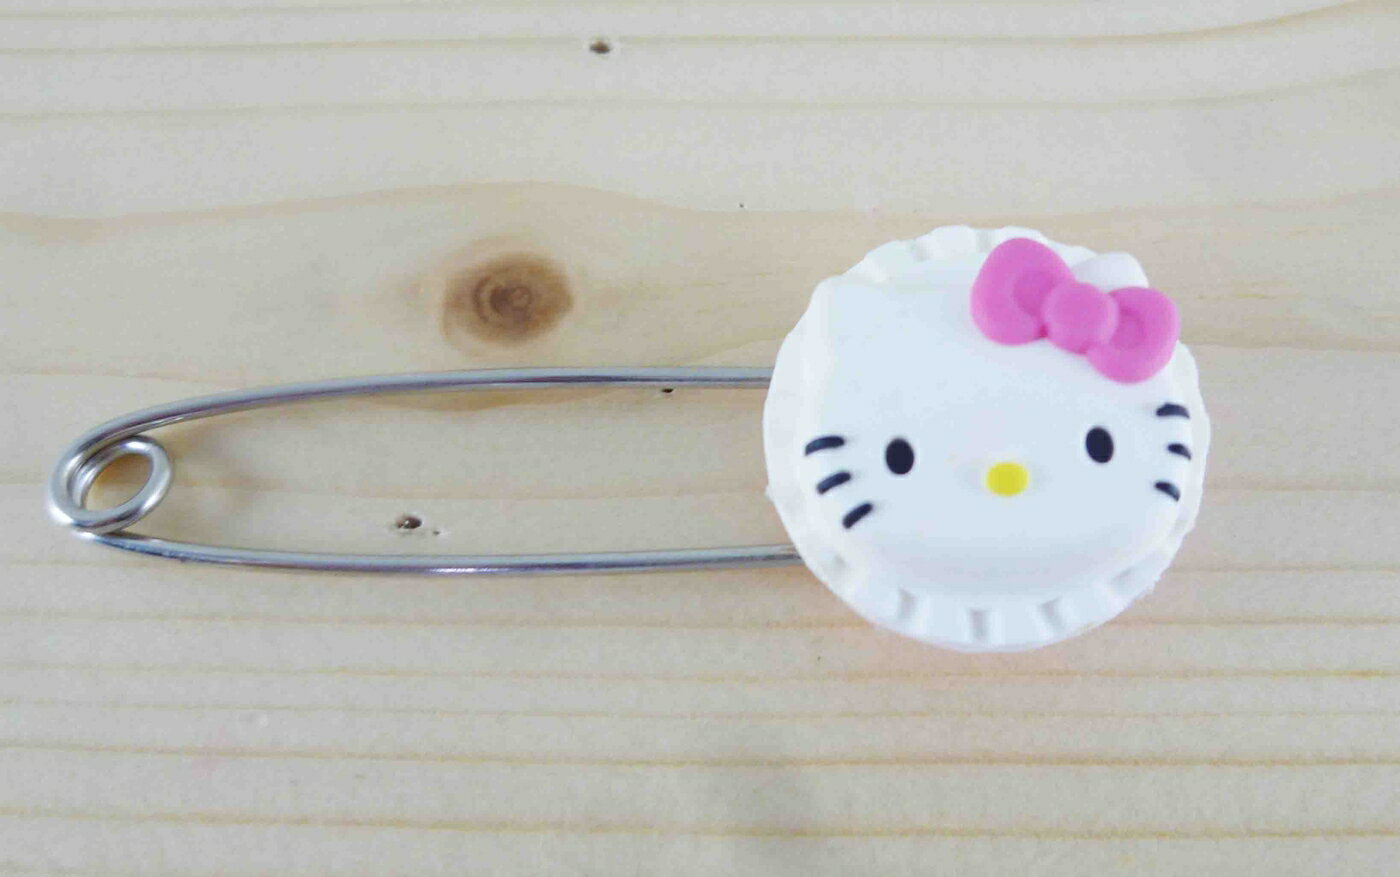 【震撼精品百貨】Hello Kitty 凱蒂貓 KITTY安全別針-大頭圓造型-白色 震撼日式精品百貨